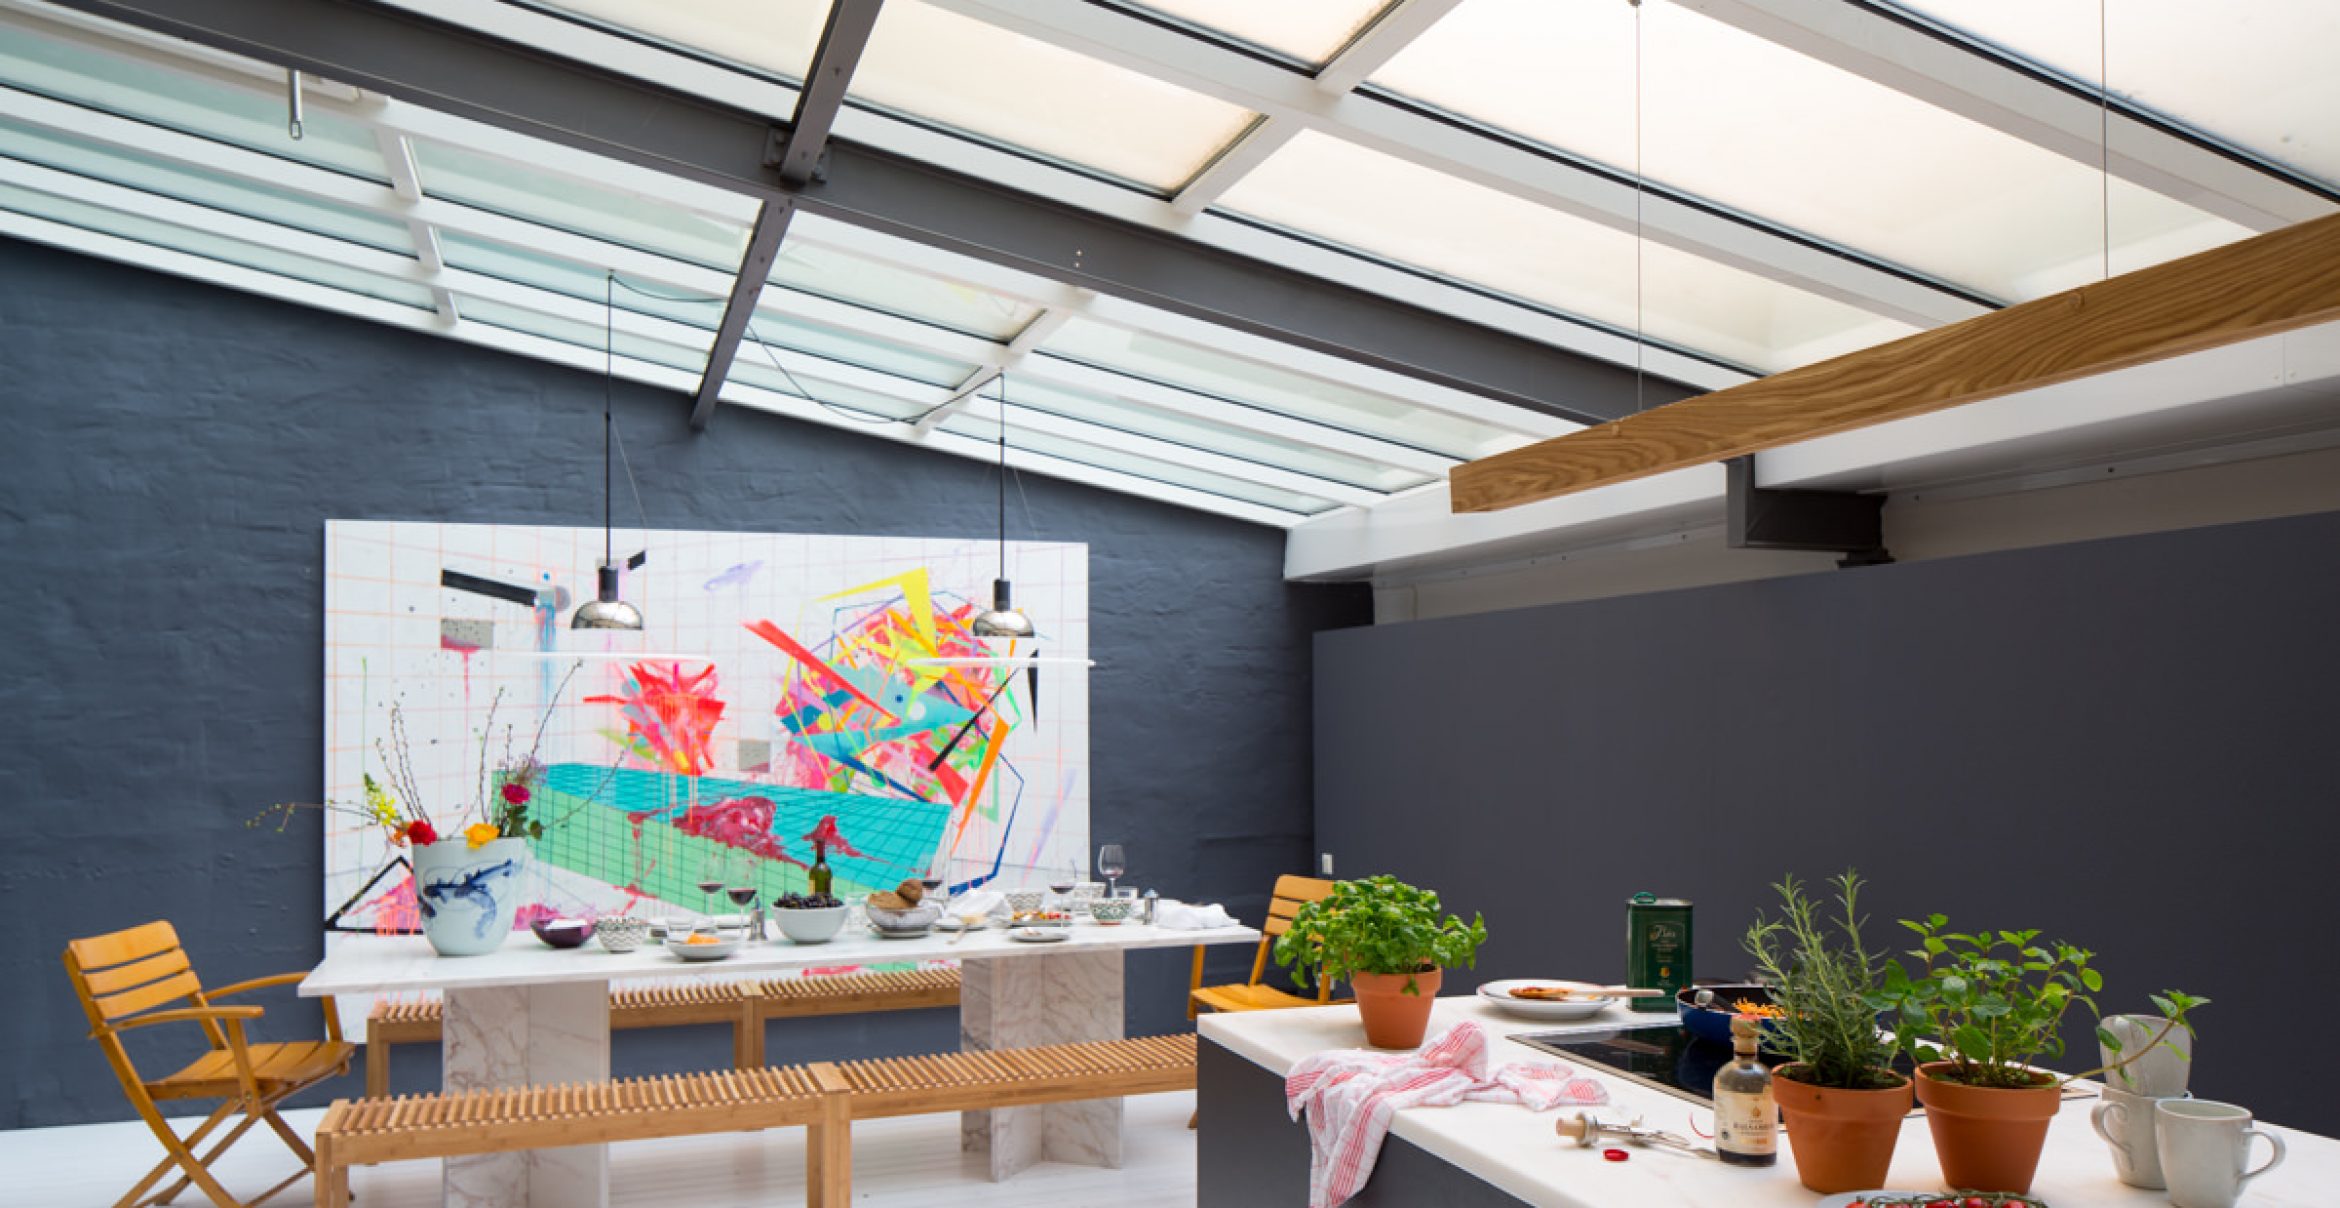 White Cube war gestern: Eine Kunstgalerie aus Frankfurt definiert Ausstellungsräume neu